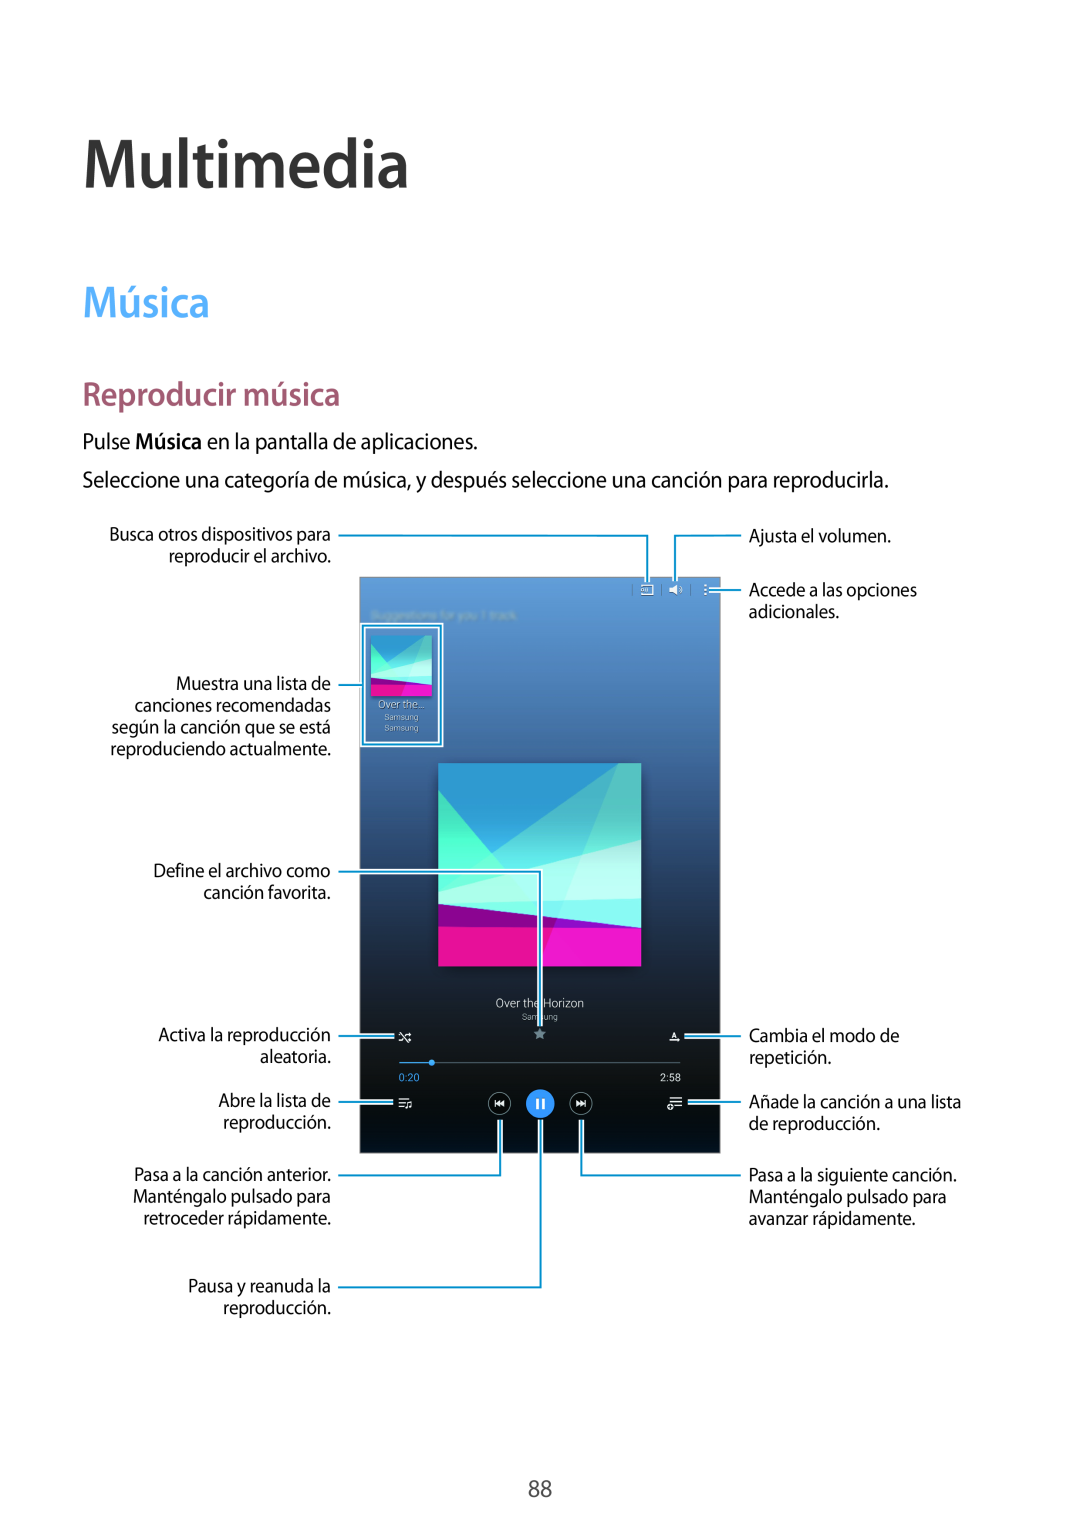 Samsung SM-T700NZWAXEO Multimedia, Música, Reproducir música, Activa la reproducción aleatoria, retroceder rápidamente 